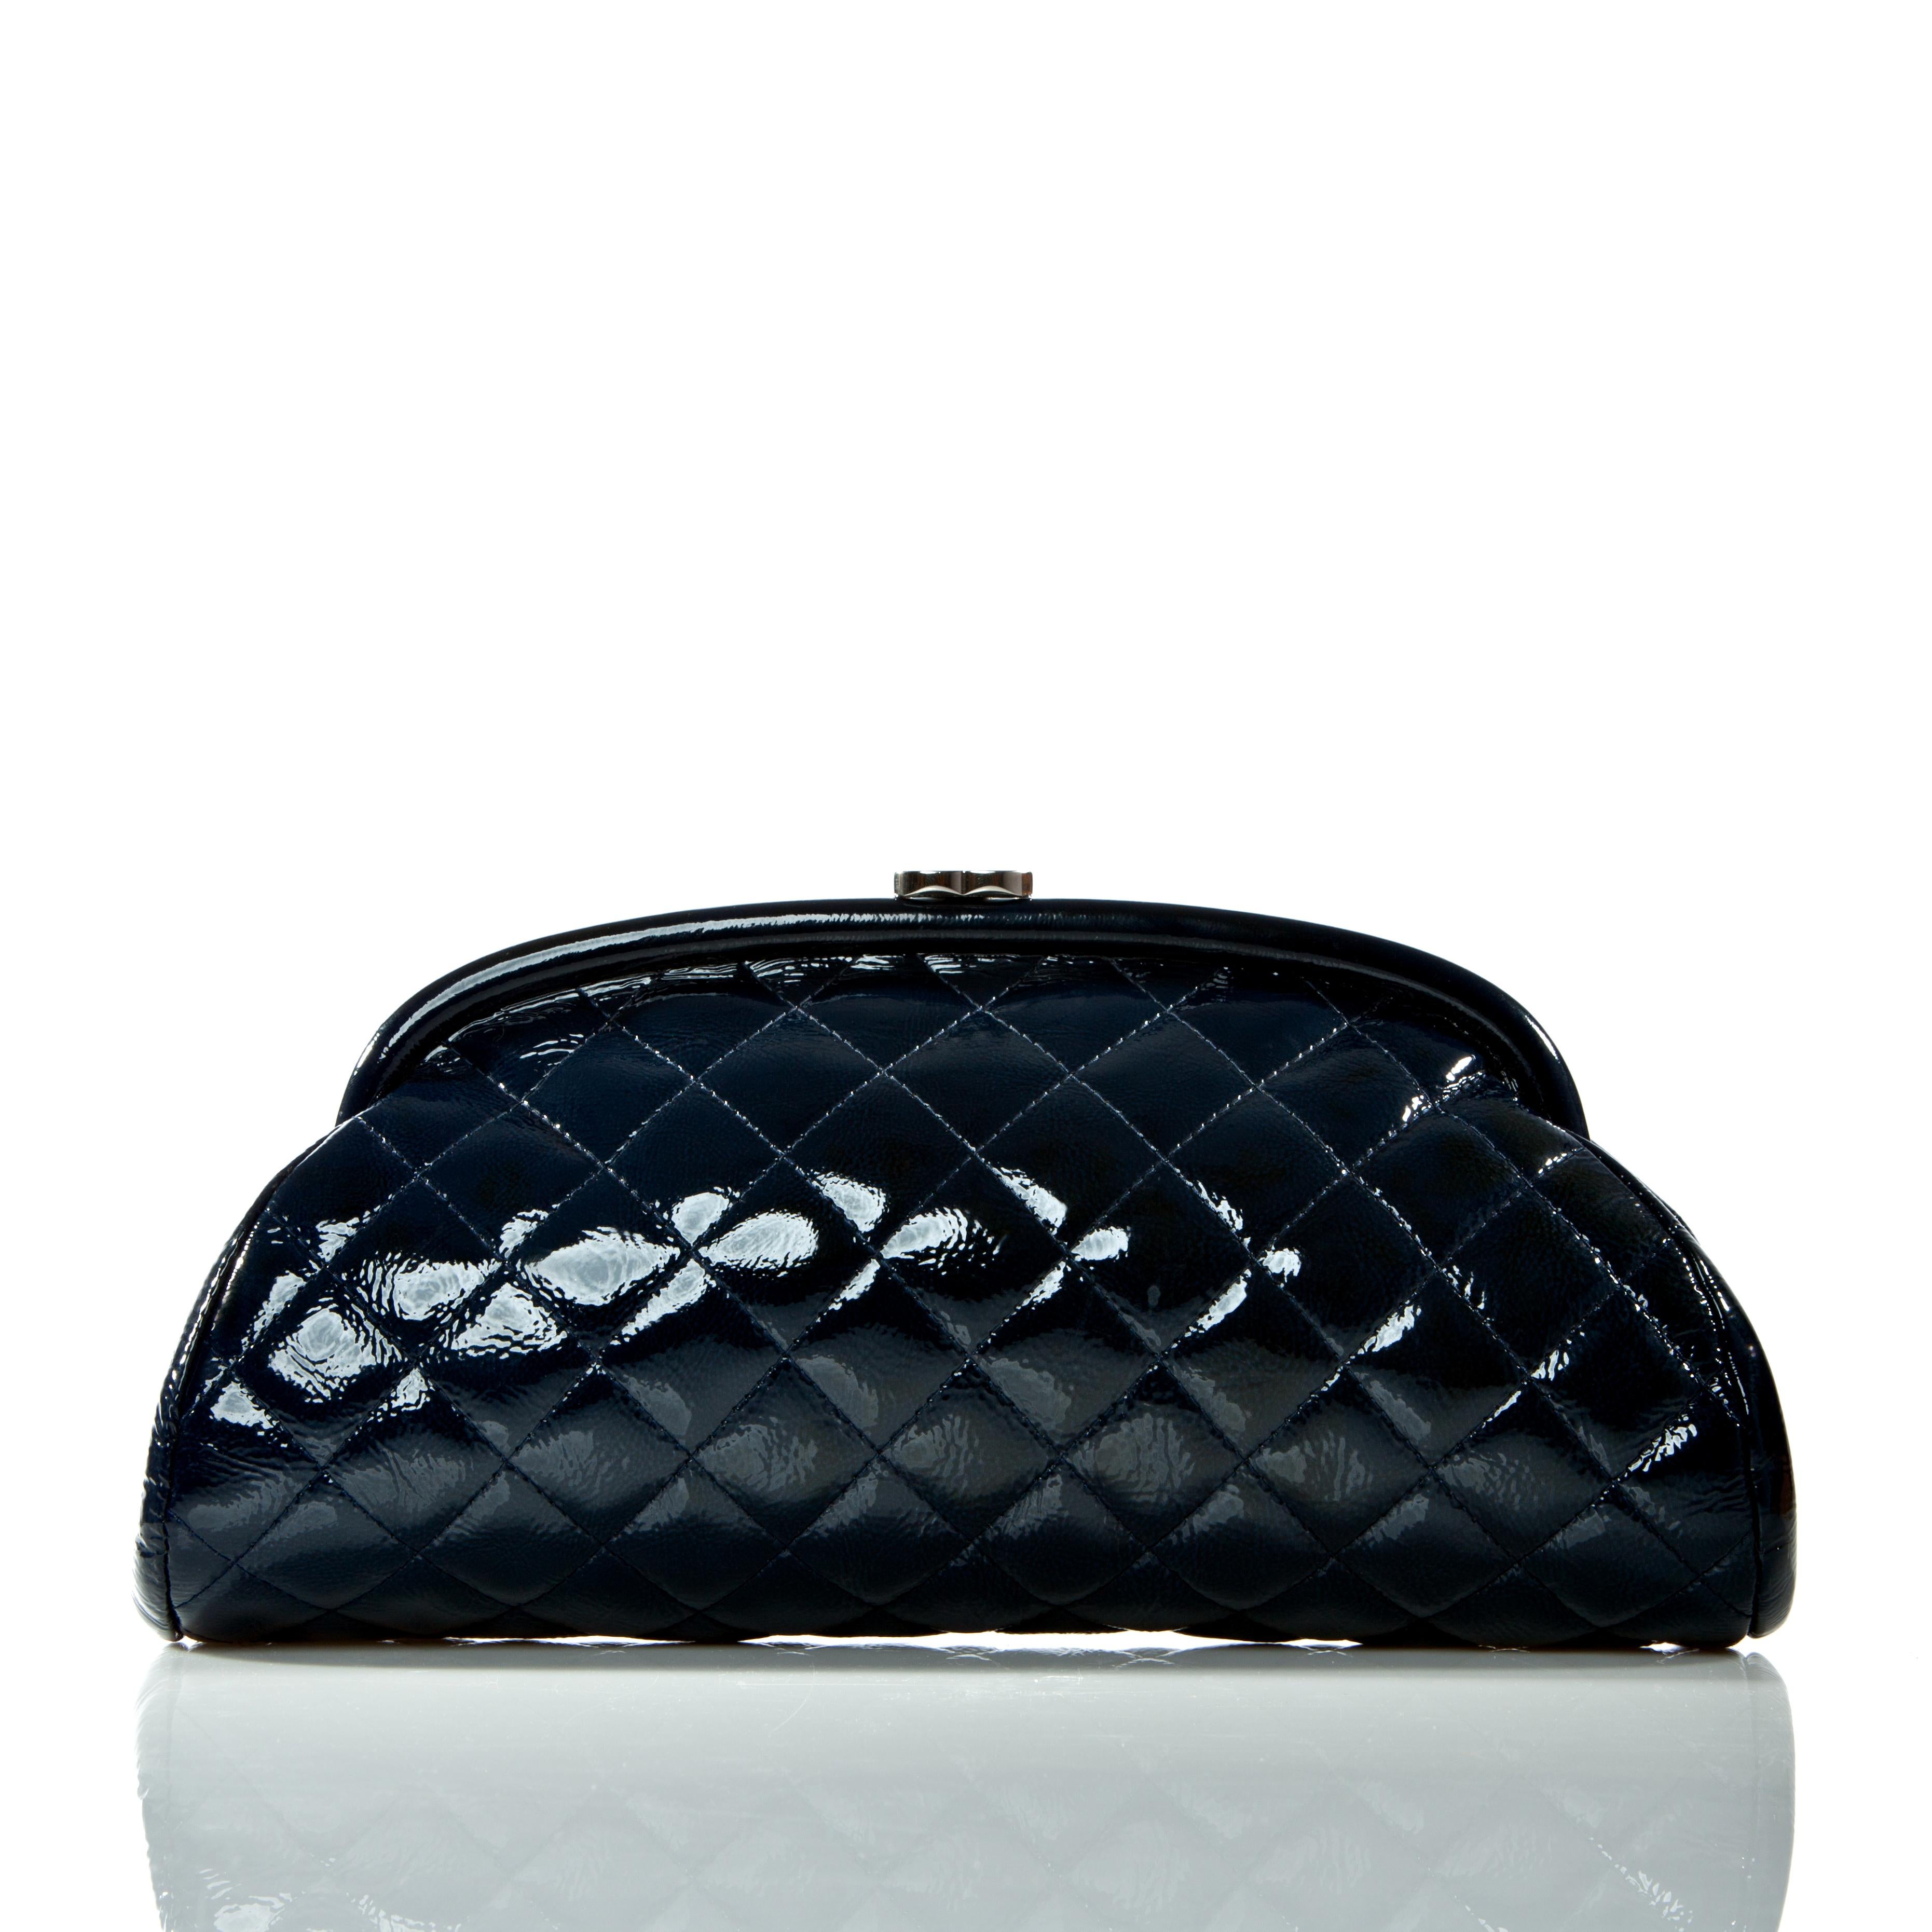 Noir Chanel 2007 Classic Vintage Bleu marine Patent Diamond Quilted Timeless Clutch Bag en vente